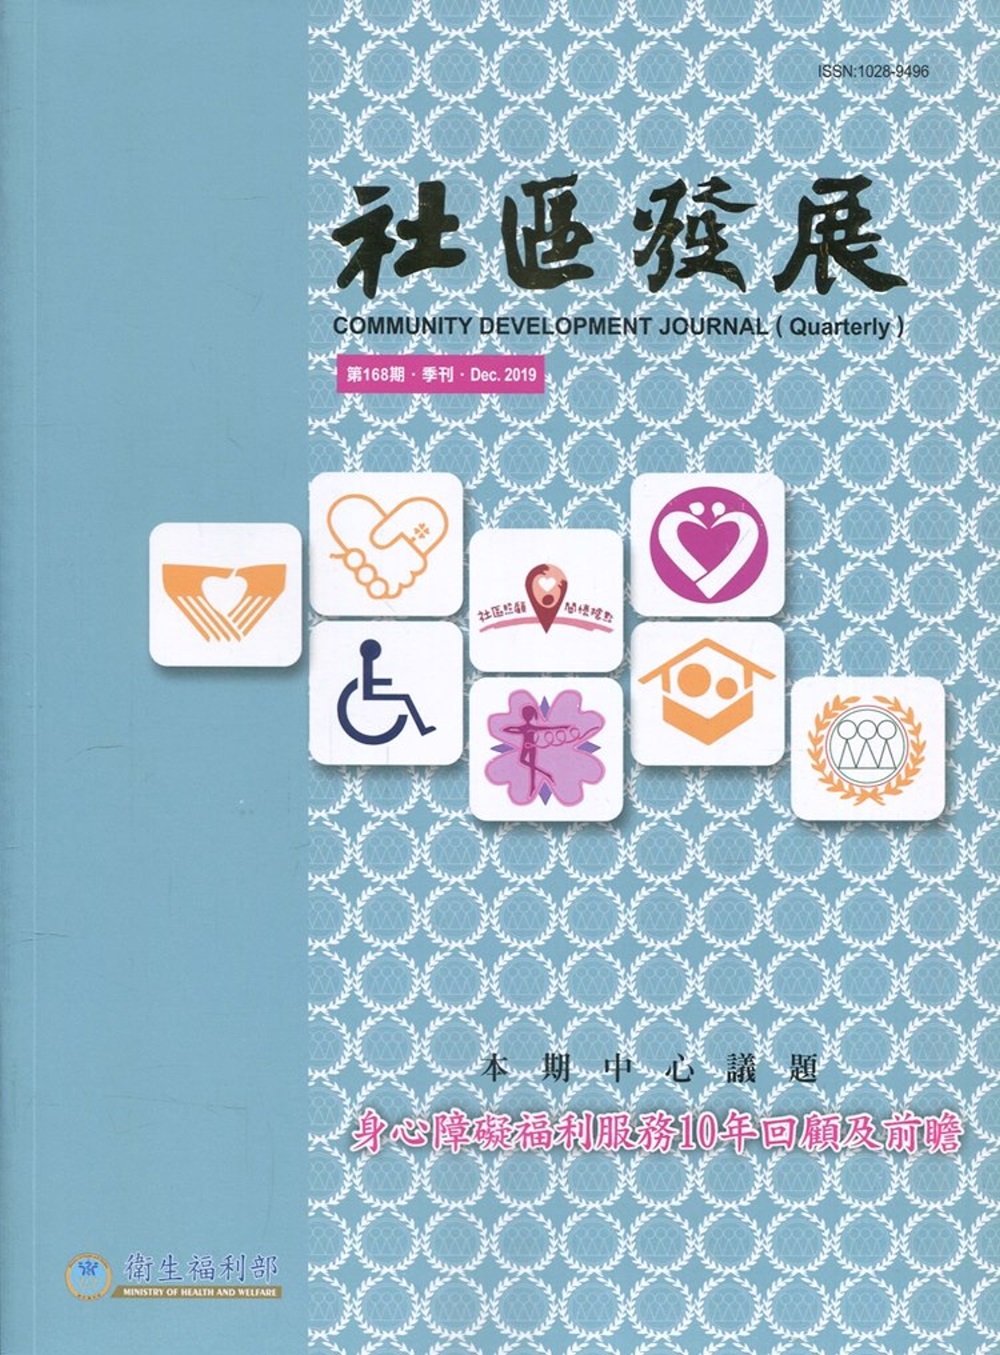 社區發展季刊168期（2019/12)：身心障礙福利服務10年回顧及前瞻